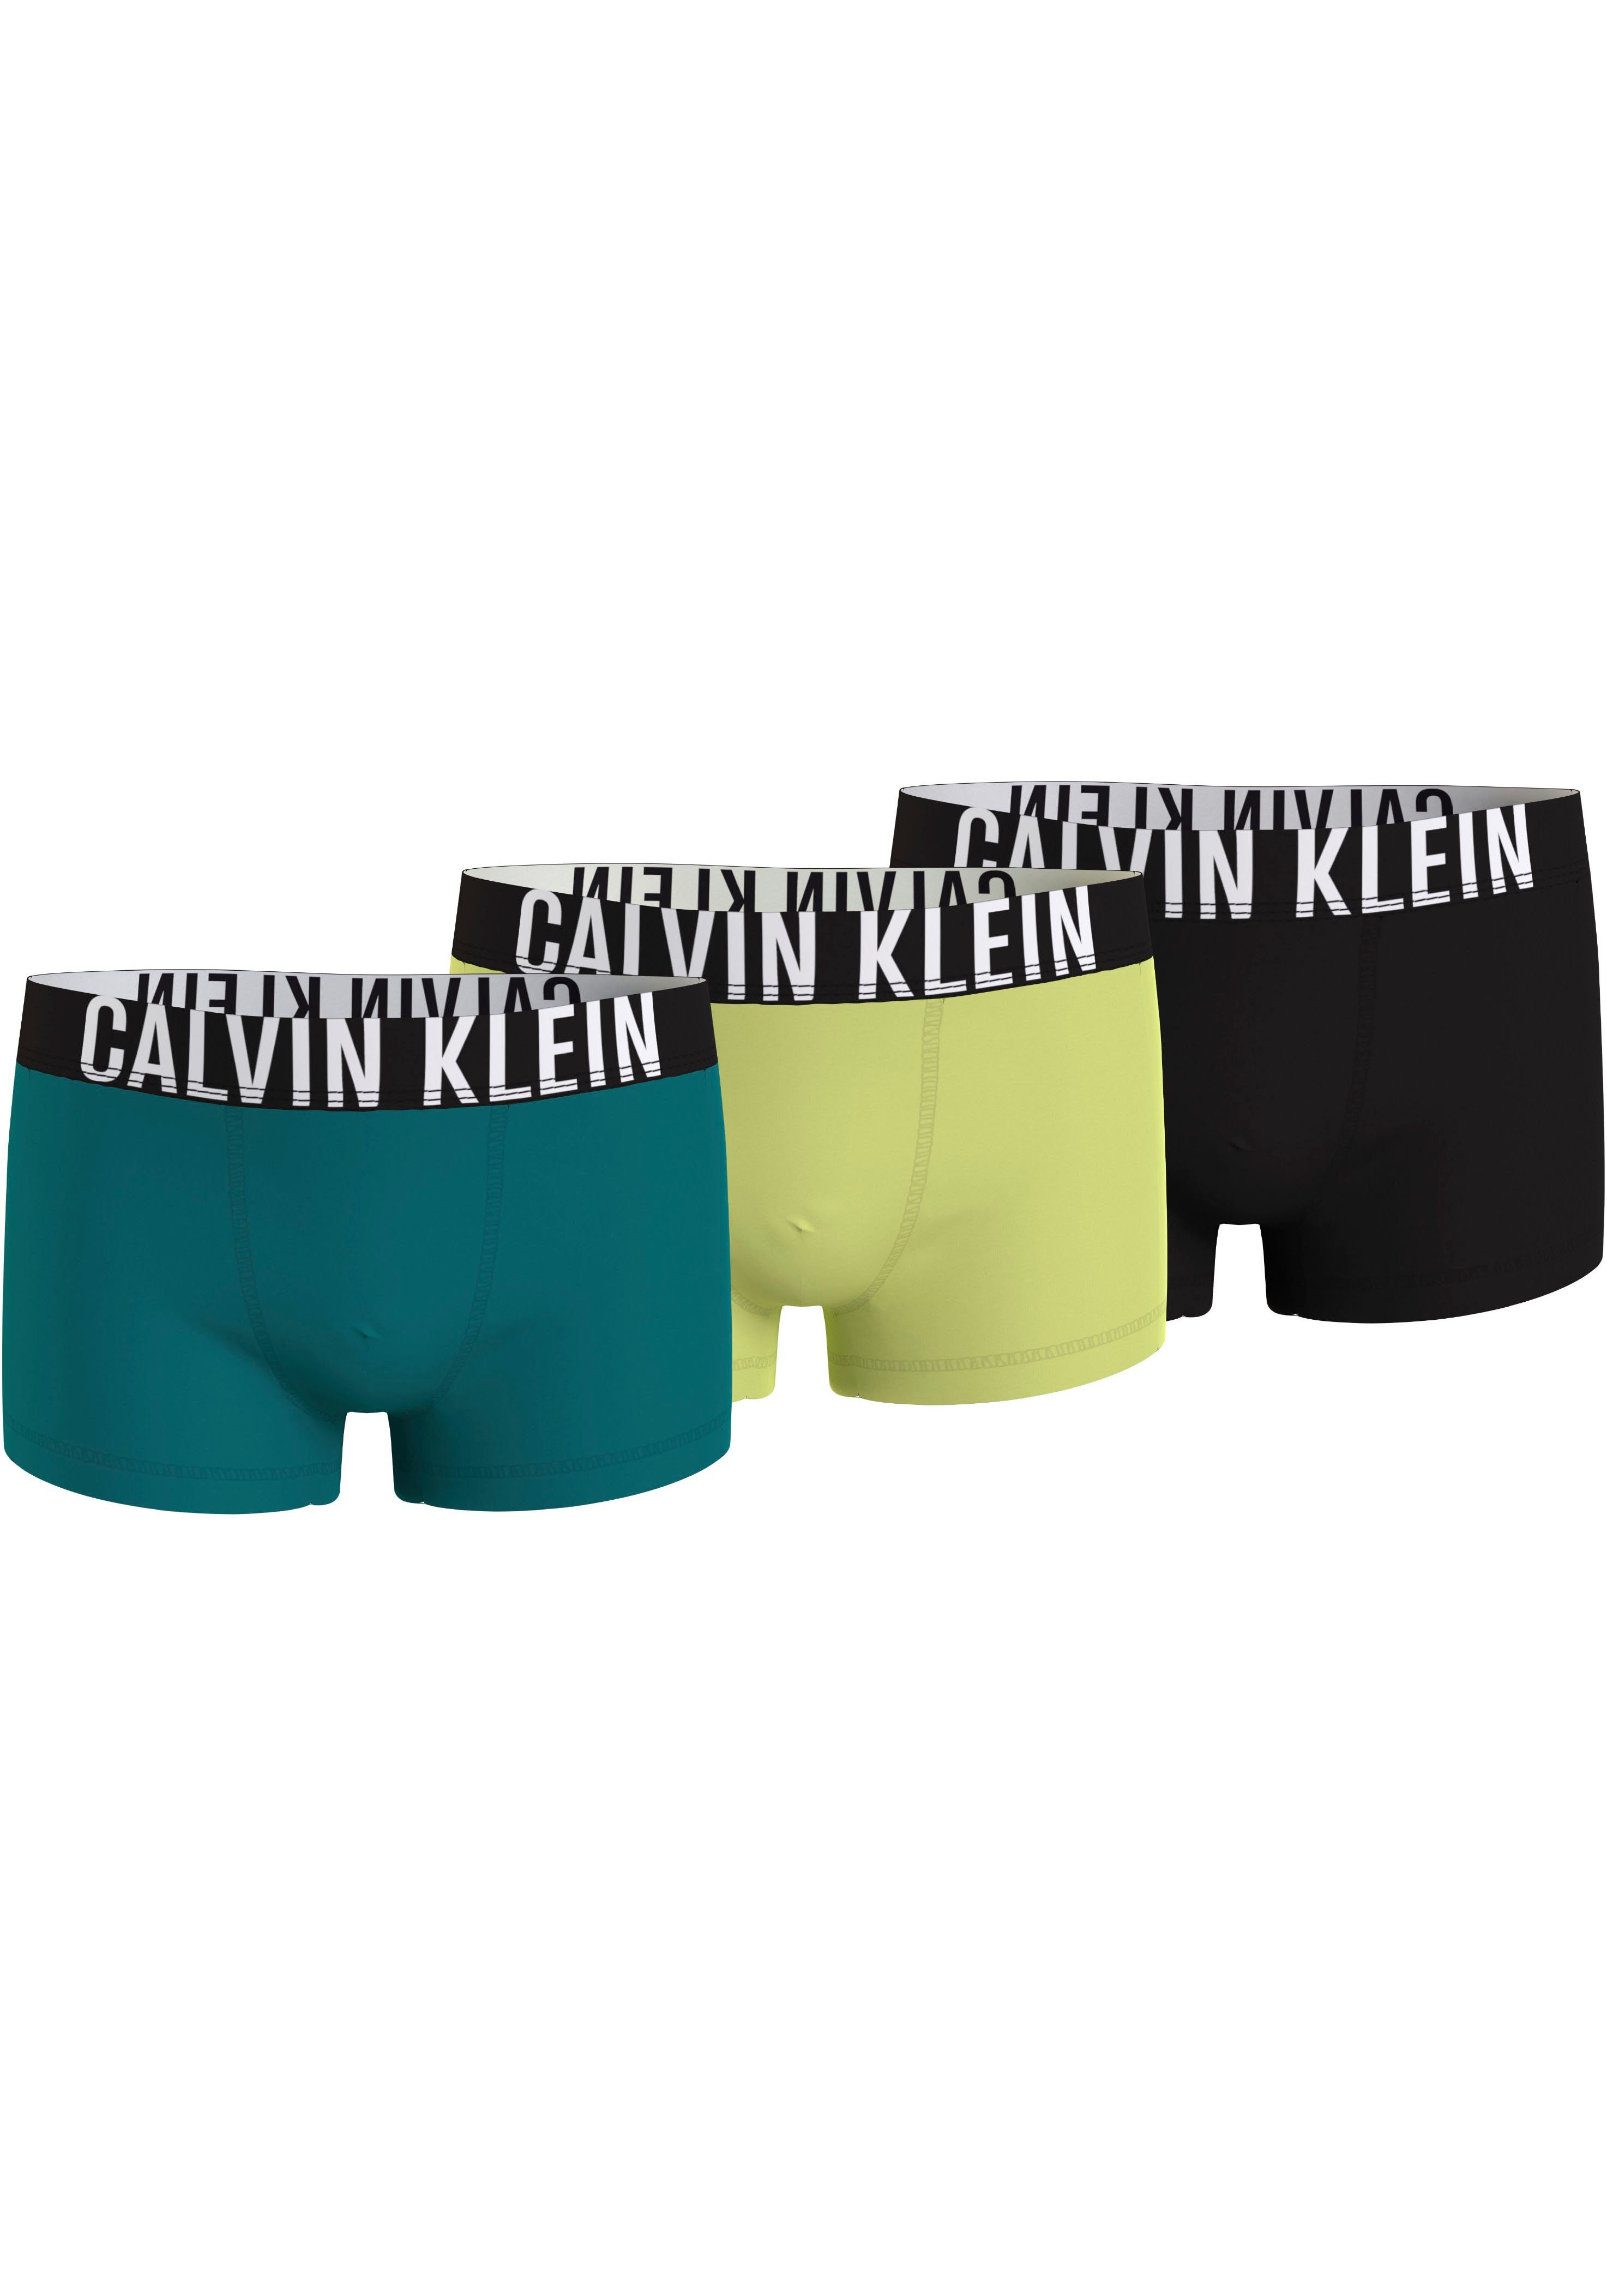 Calvin Klein boxershort set van 3 zwart geel blauw Jongens Biologisch katoen 128-140